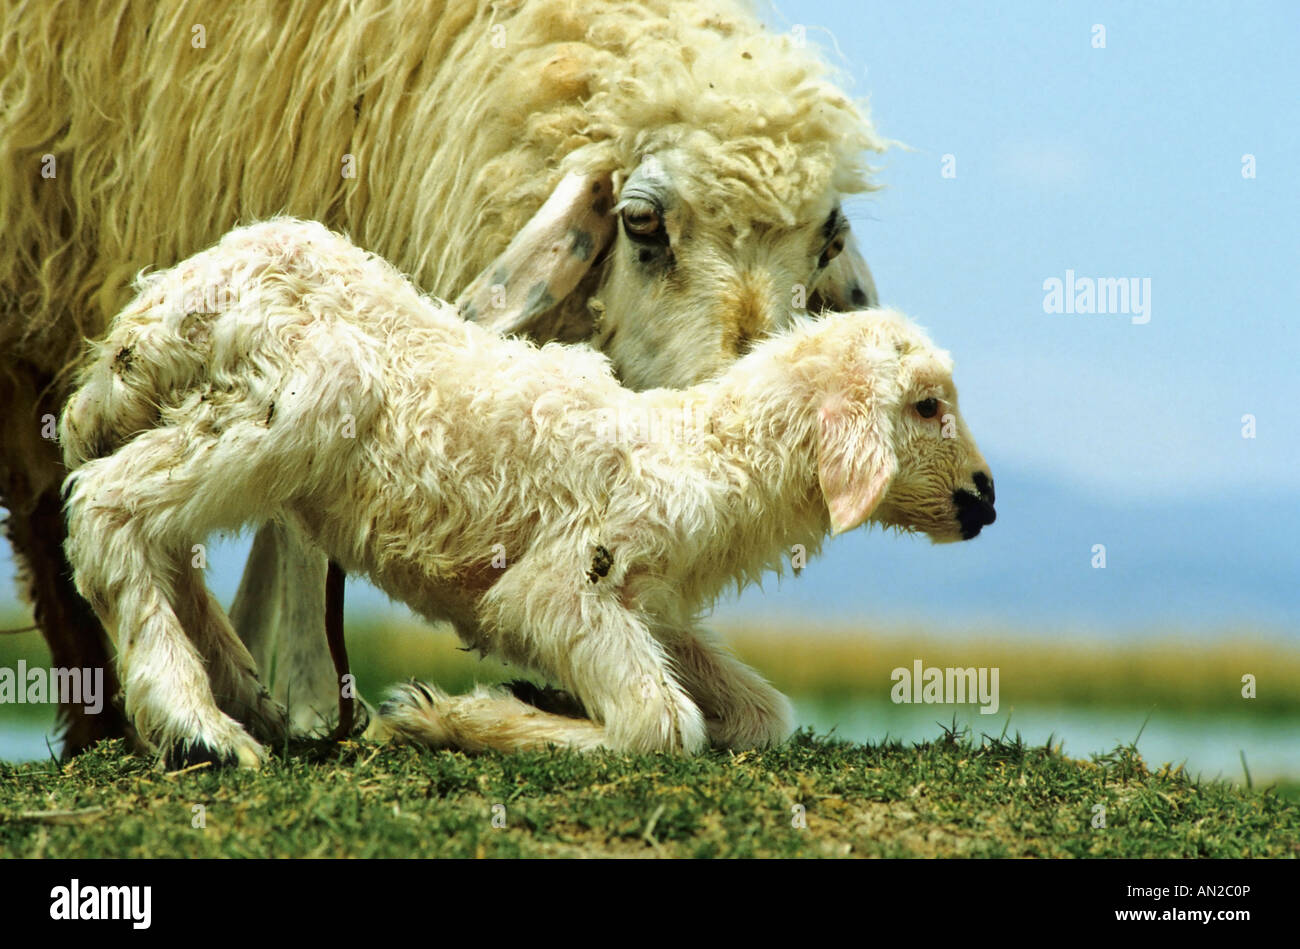 Schafe sheep neugeborenes newborn Stock Photo